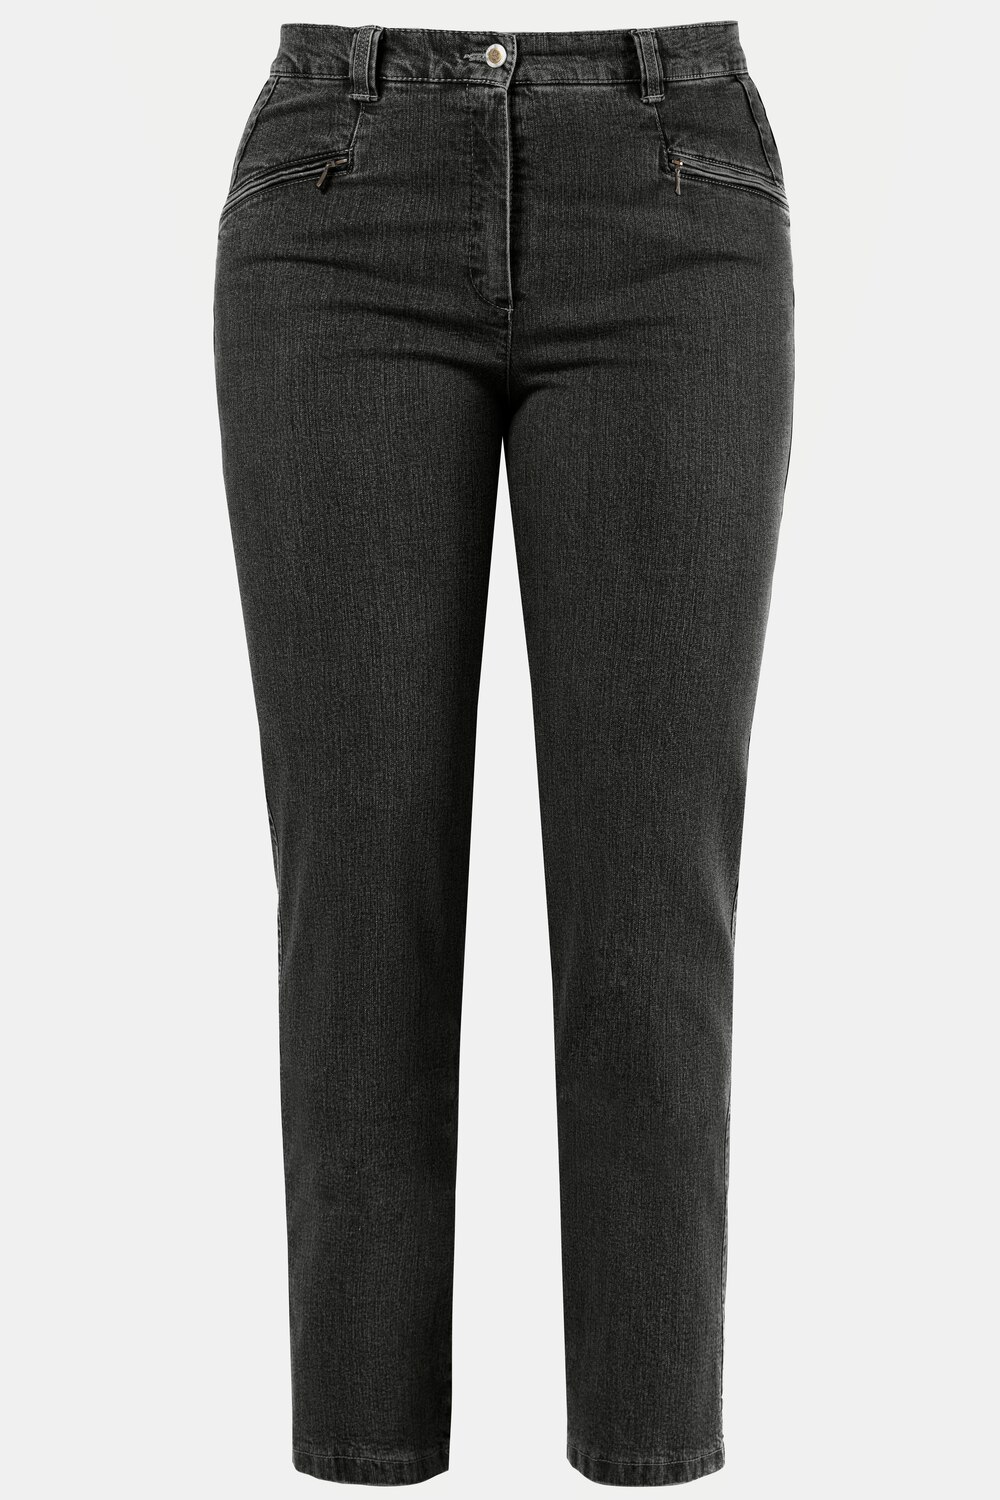 Grote Maten jeans Mony, Dames, zwart, Maat: 116, Katoen/Polyester, Ulla Popken